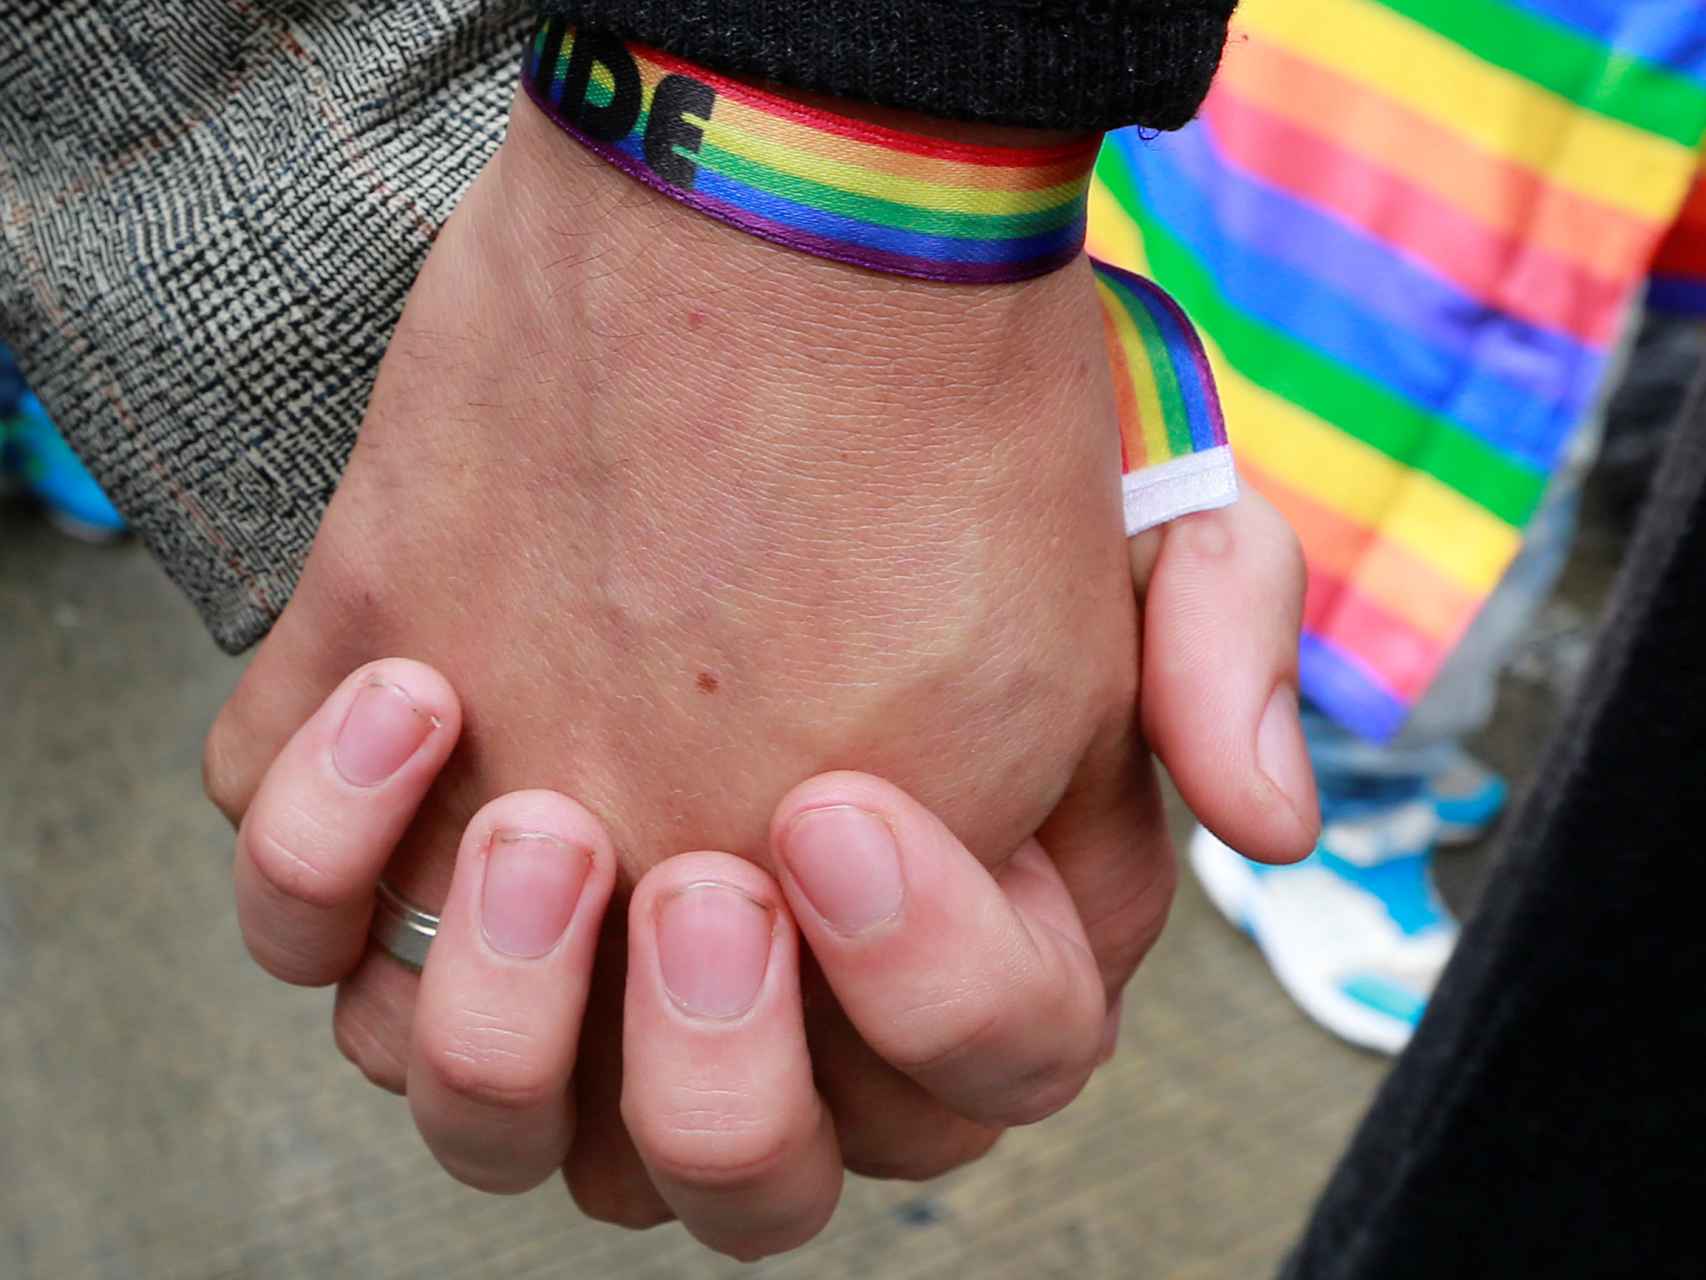 Una pareja de homosexuales se estrecha la mano en una manifestación en Colombia